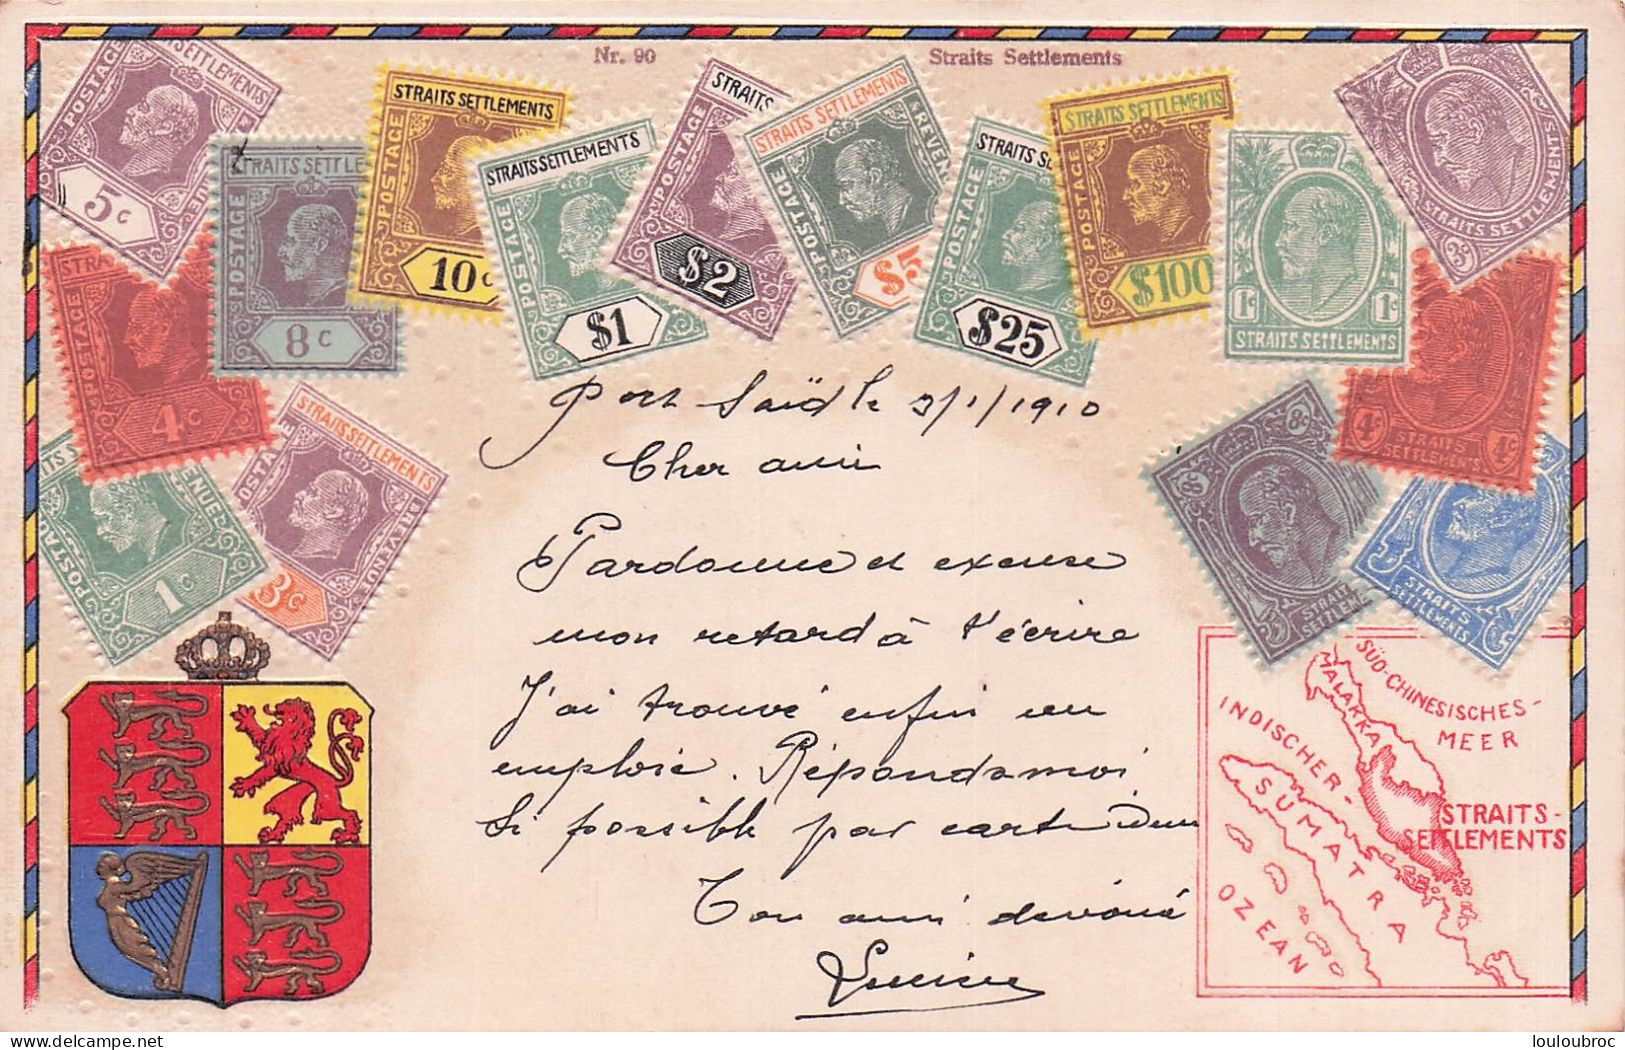 STRAITS SETTLEMENTS - Briefmarken (Abbildungen)